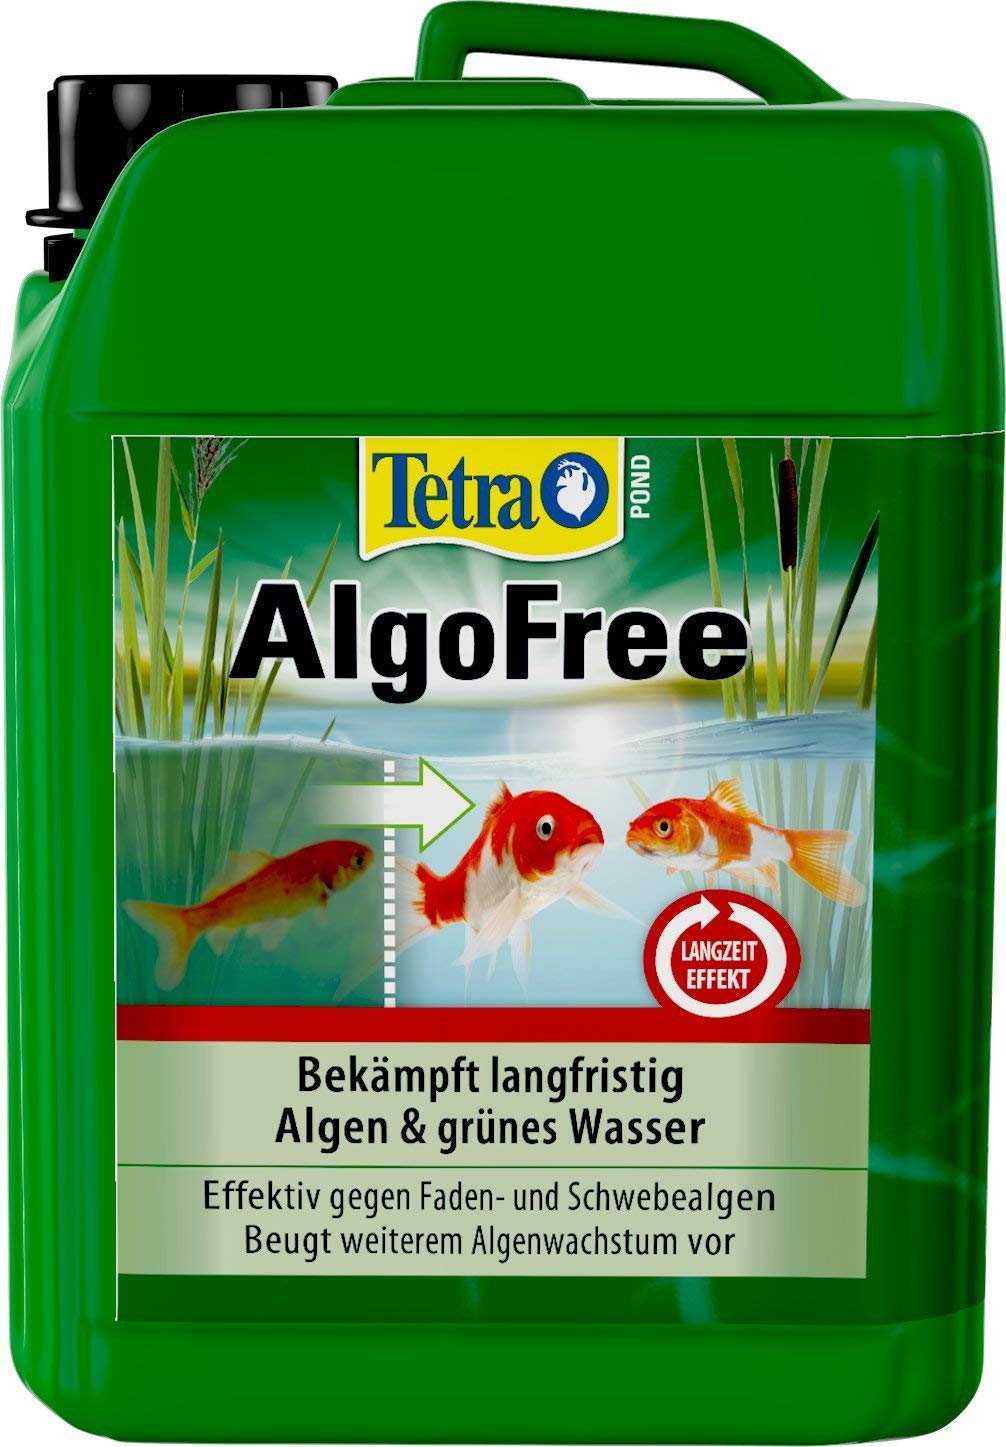 Tetra Pond AlgoFree Schwebealgen- und Fadenalgenvernichter, bekämpft langfristig grünes Wasser im Gartenteich, 3 L